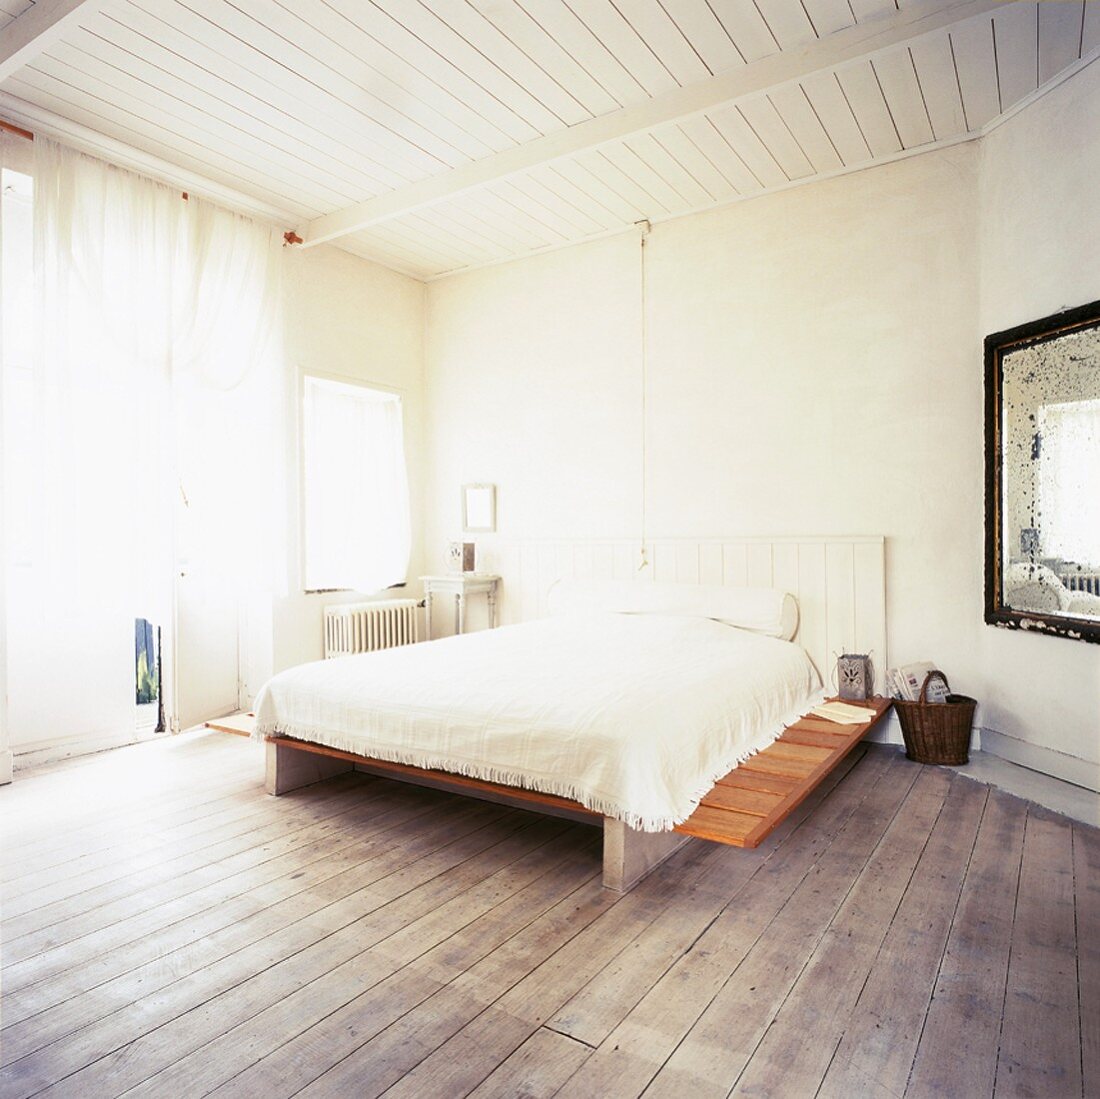 Das Bett in dem spartanisch eingerichteten Schlafzimmer vereint verschiedene Stile und Materialien zu einem Ganzen